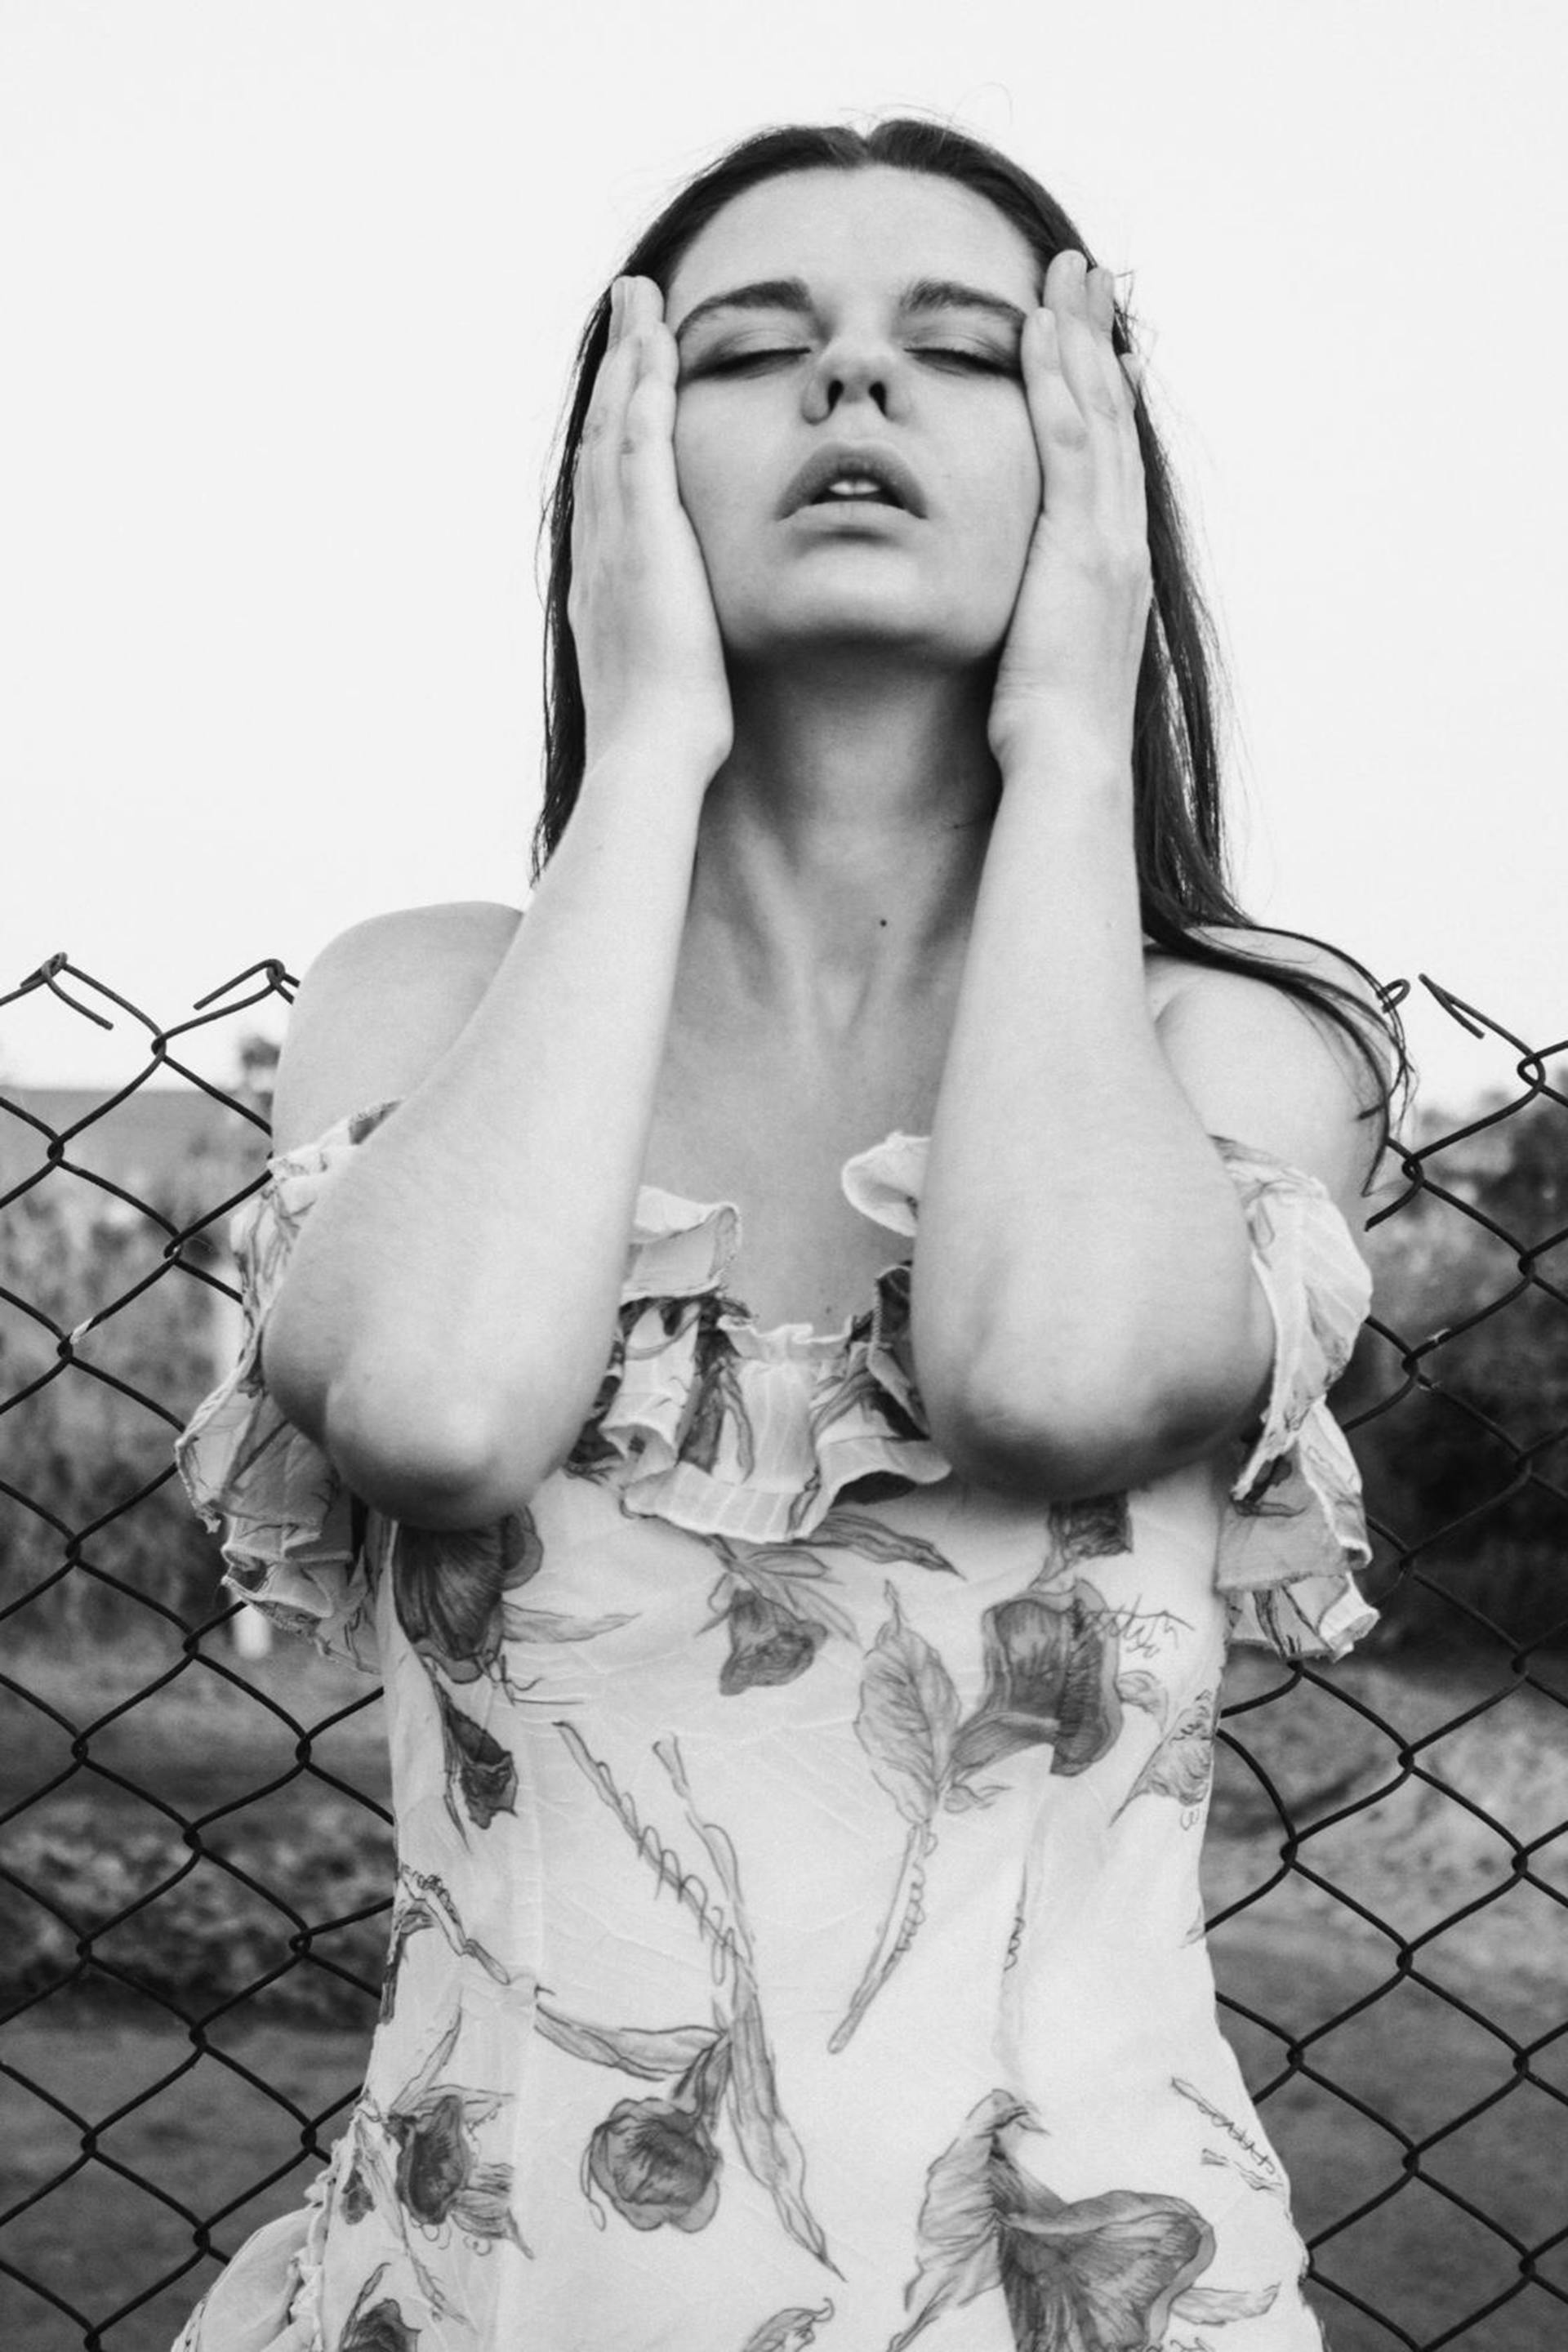 Ein Graustufenfoto einer Frau mit den Händen im Gesicht | Quelle: Pexels